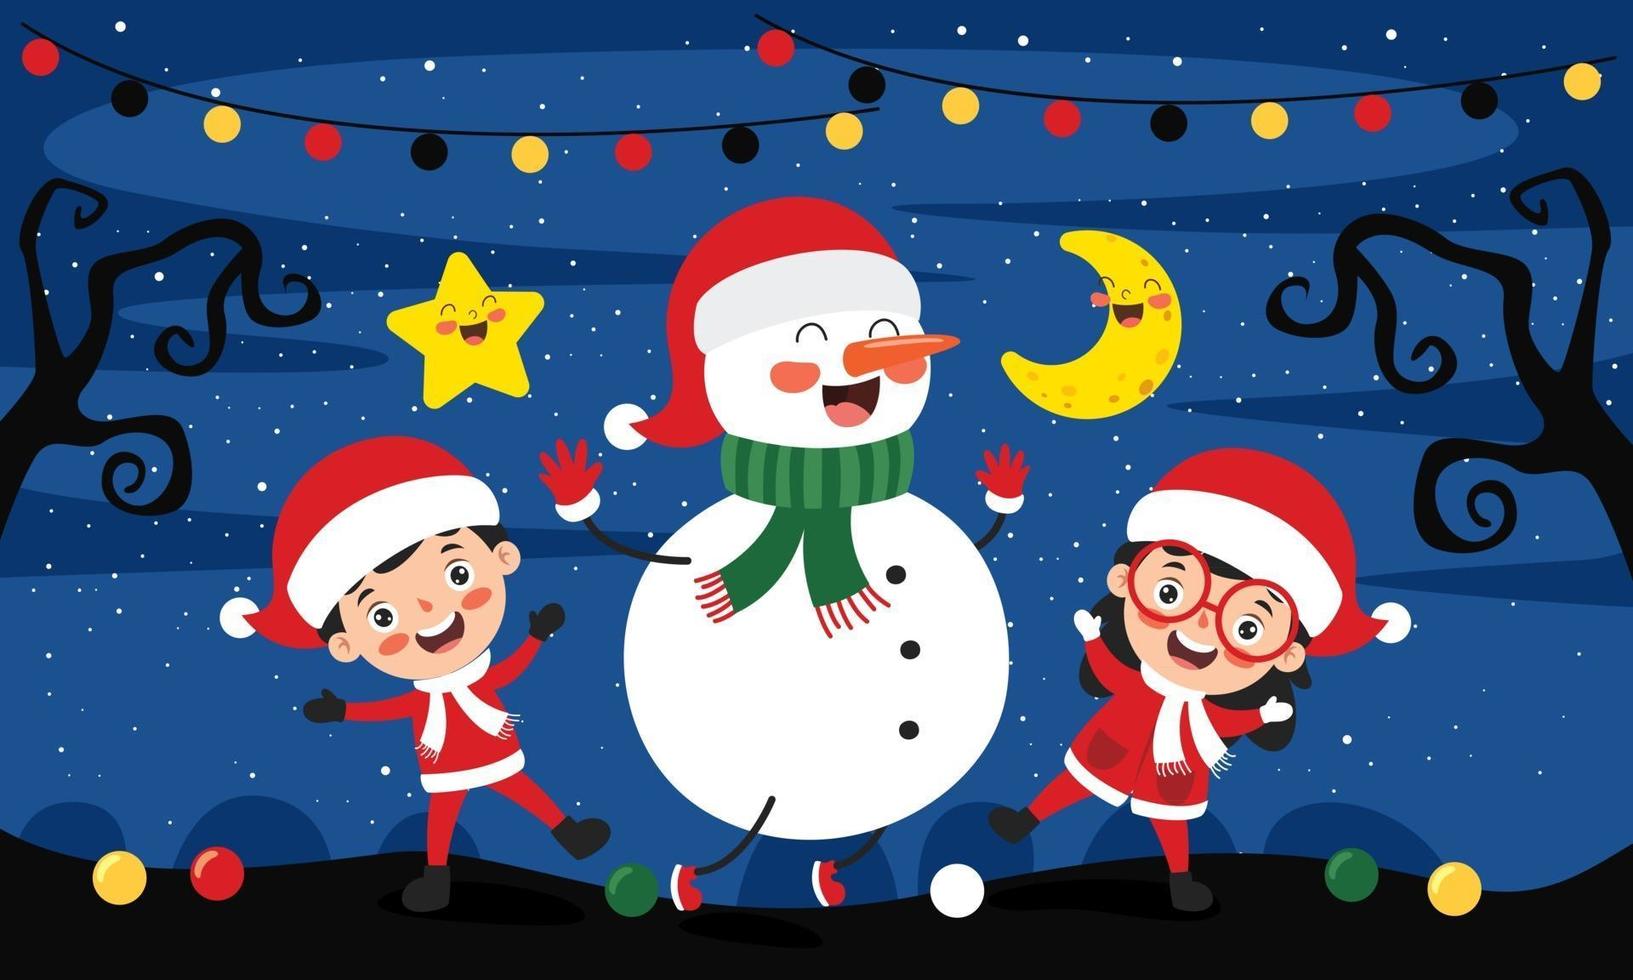 design biglietto di auguri di Natale con personaggi dei cartoni animati vettore